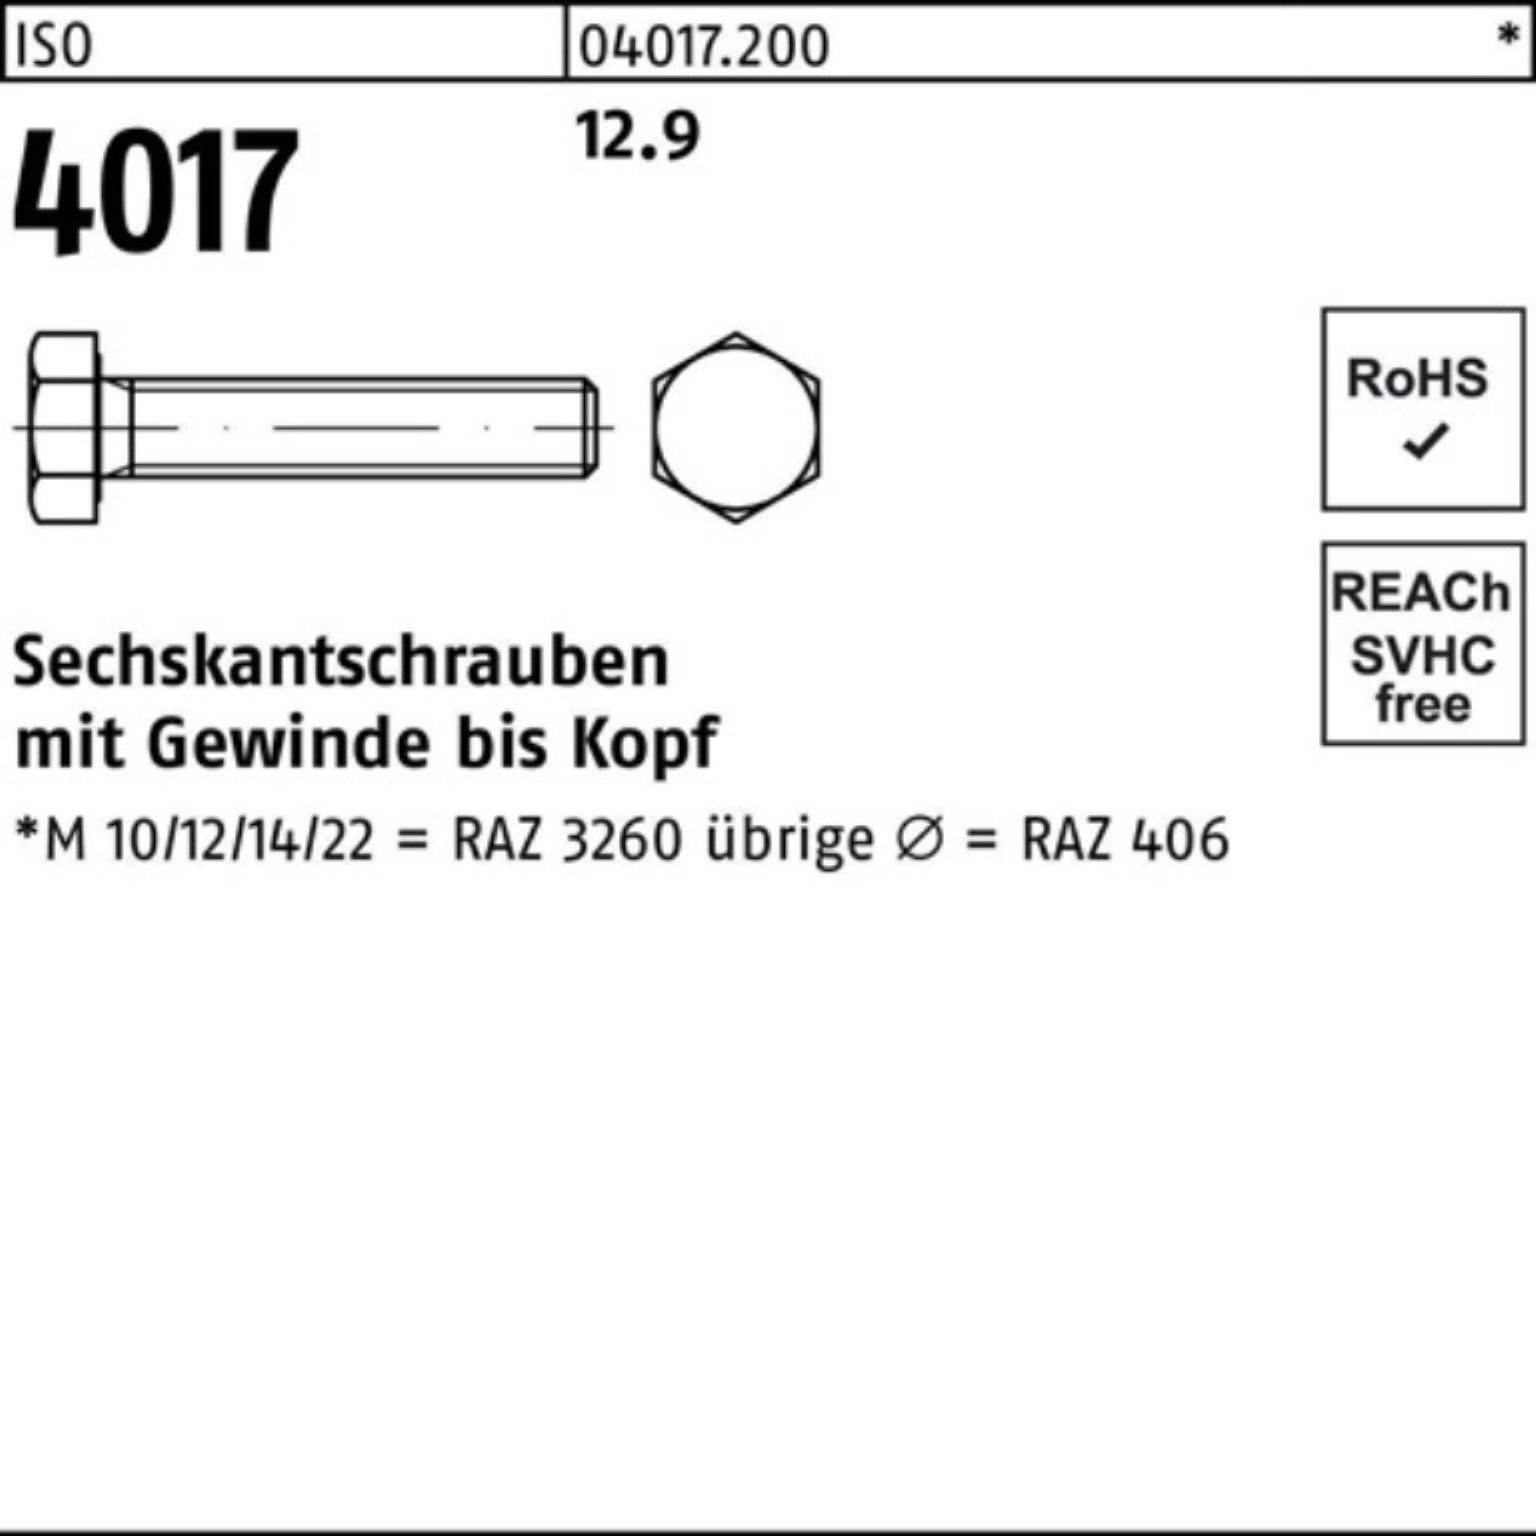 Sechskantschraube 12.9 Bufab 70 25 ISO ISO 100er 40 Pack VG Sechskantschraube 4017 Stück M16x